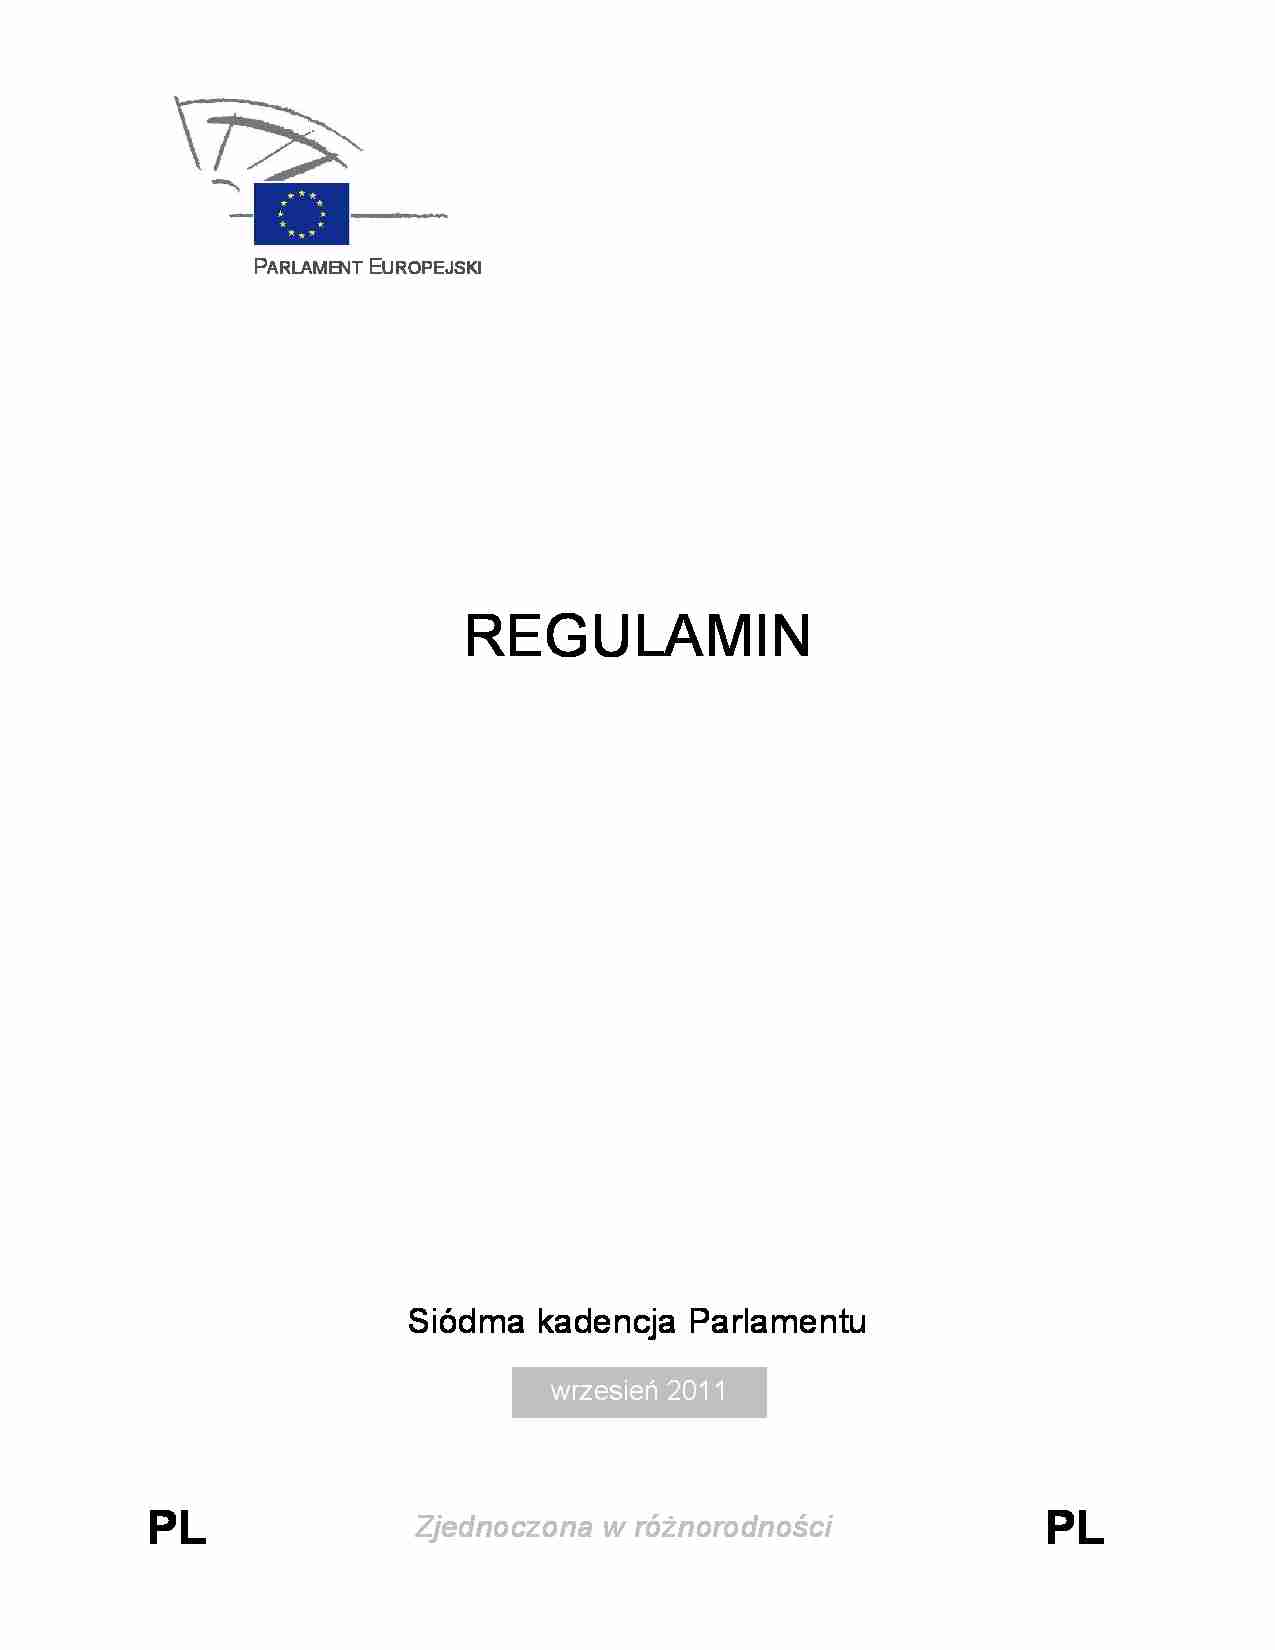 Regulamin Parlamentu Europejskiego - wrzesień 2011 - strona 1